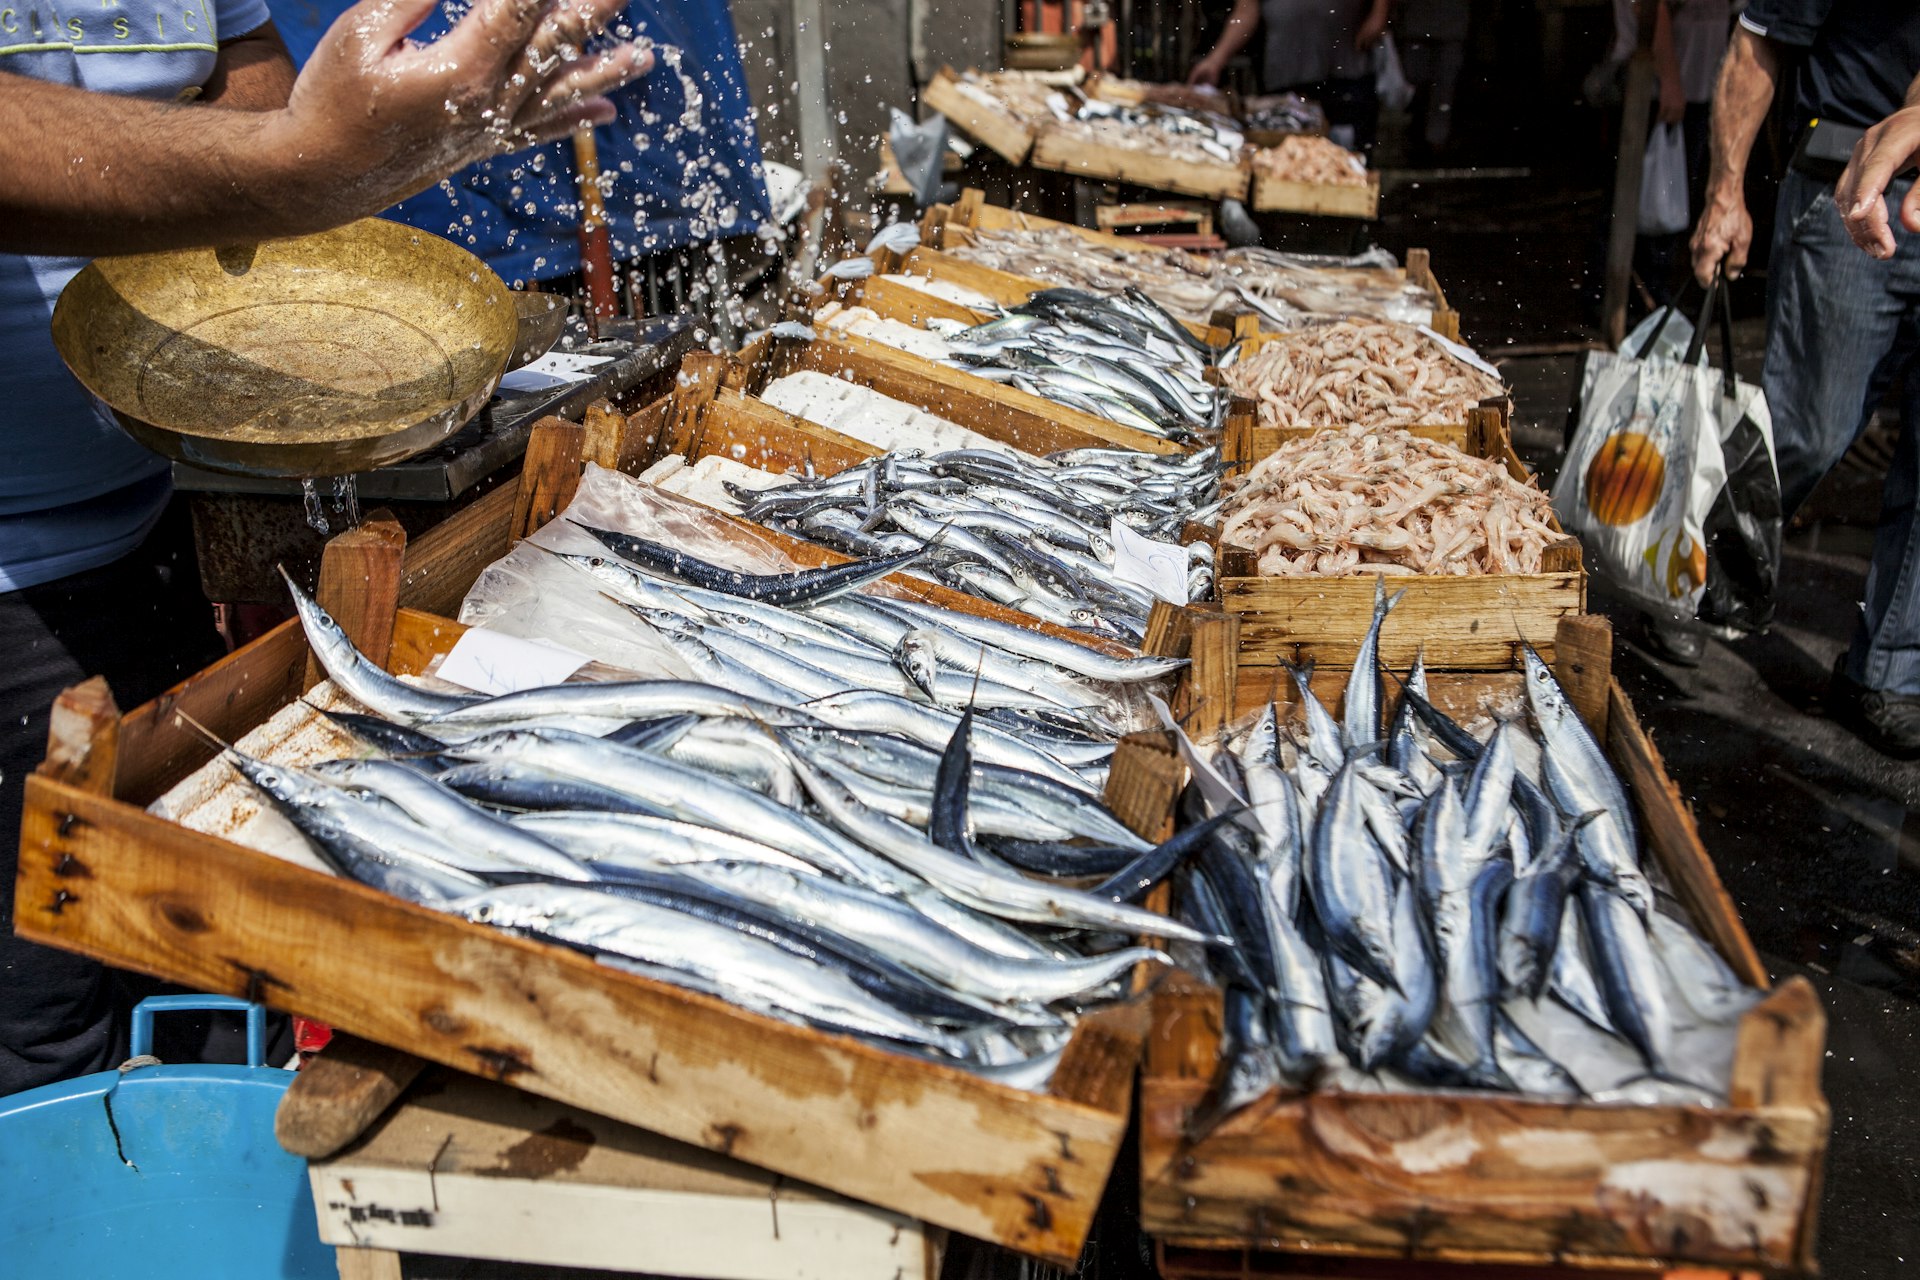 Uma barraca de peixe em La Pescheria, o mercado de peixe de Catânia, com caixas de madeira cheias de vários tipos de peixe fresco